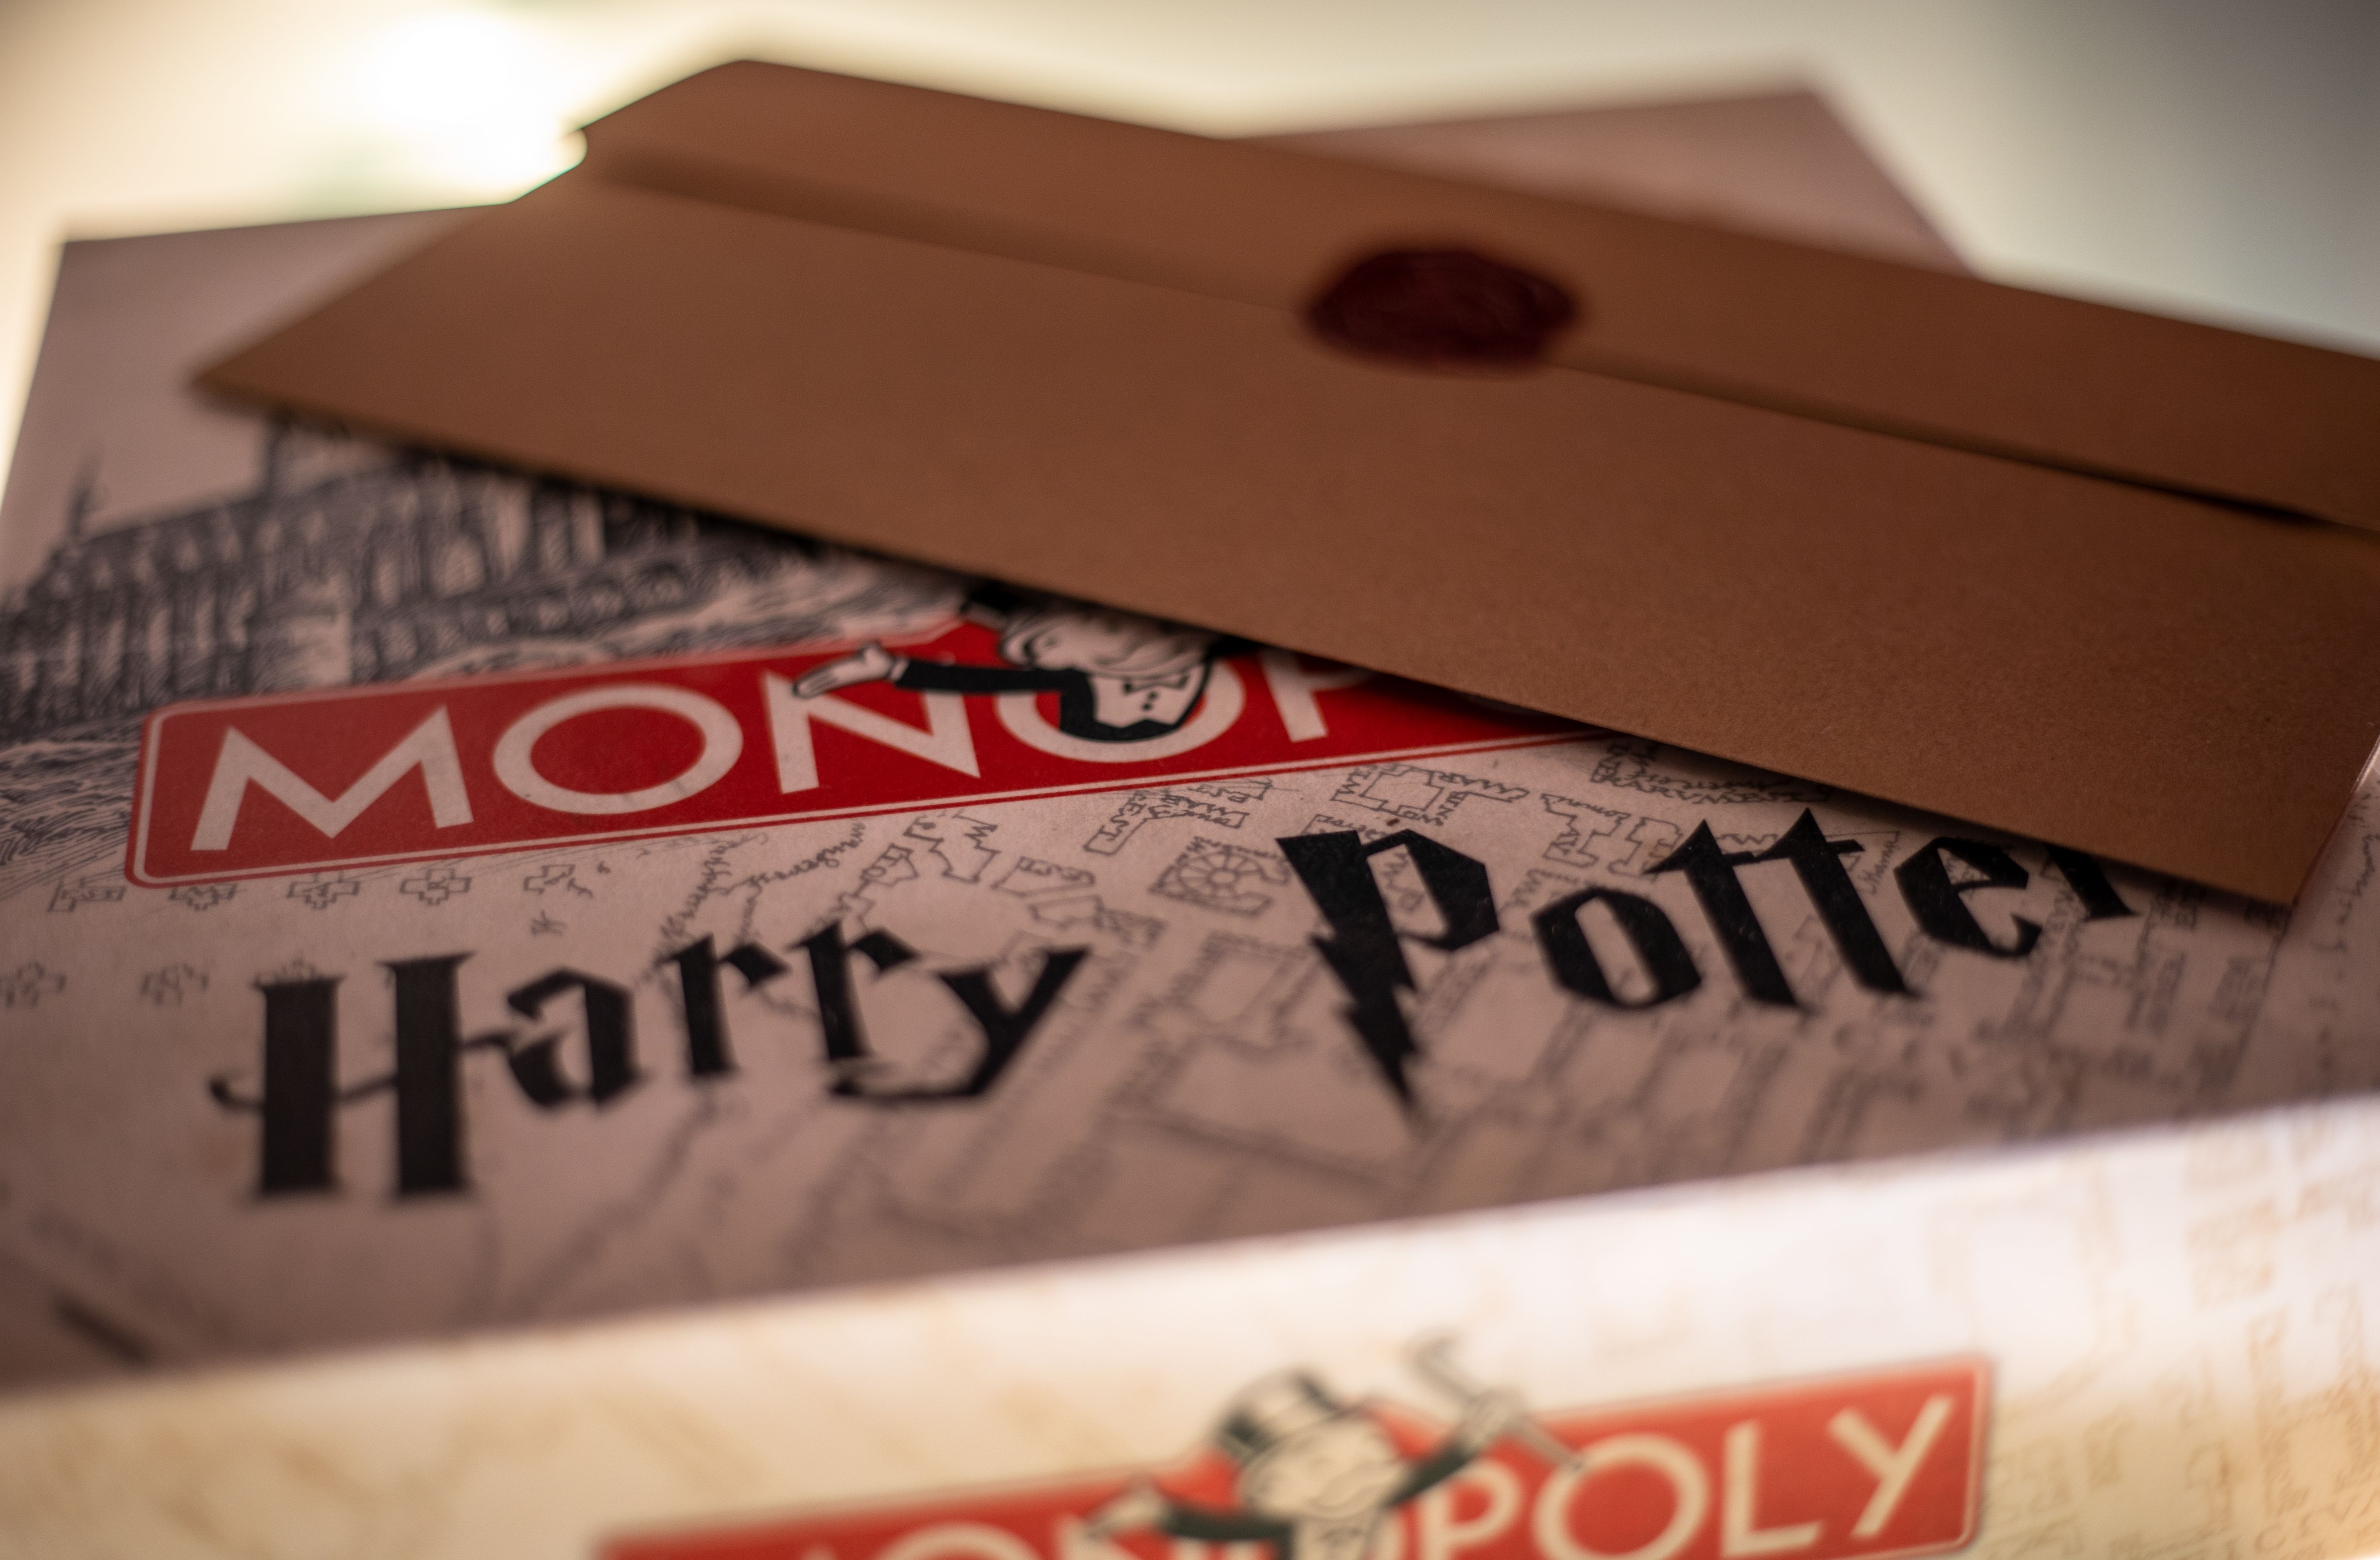 Boîte du Monopoly Harry Potter avec le courrier